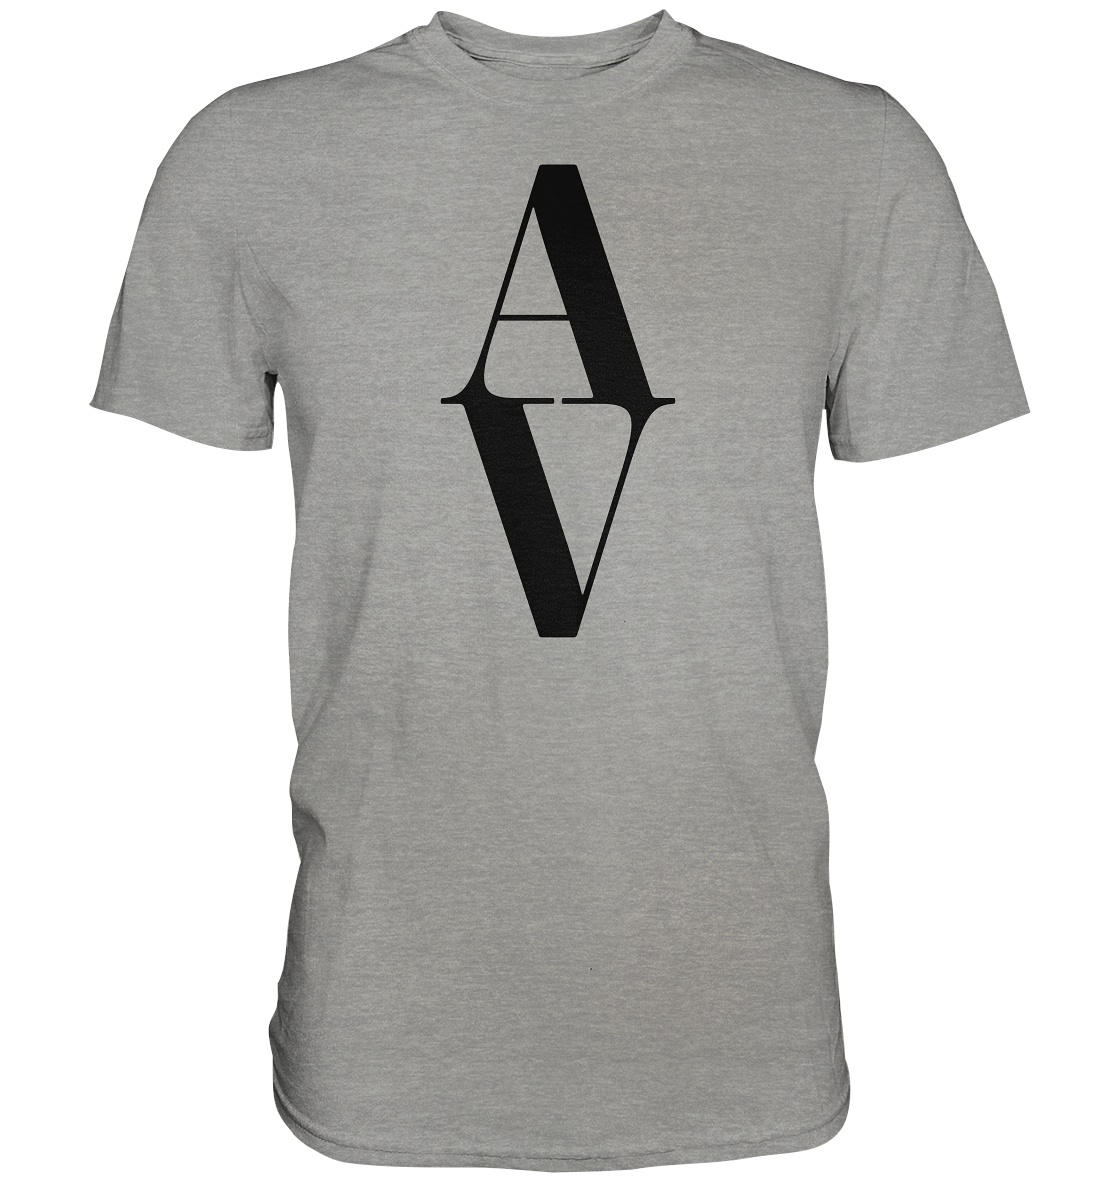 AV / Premium Unisex Tshirt with Black AV Logo